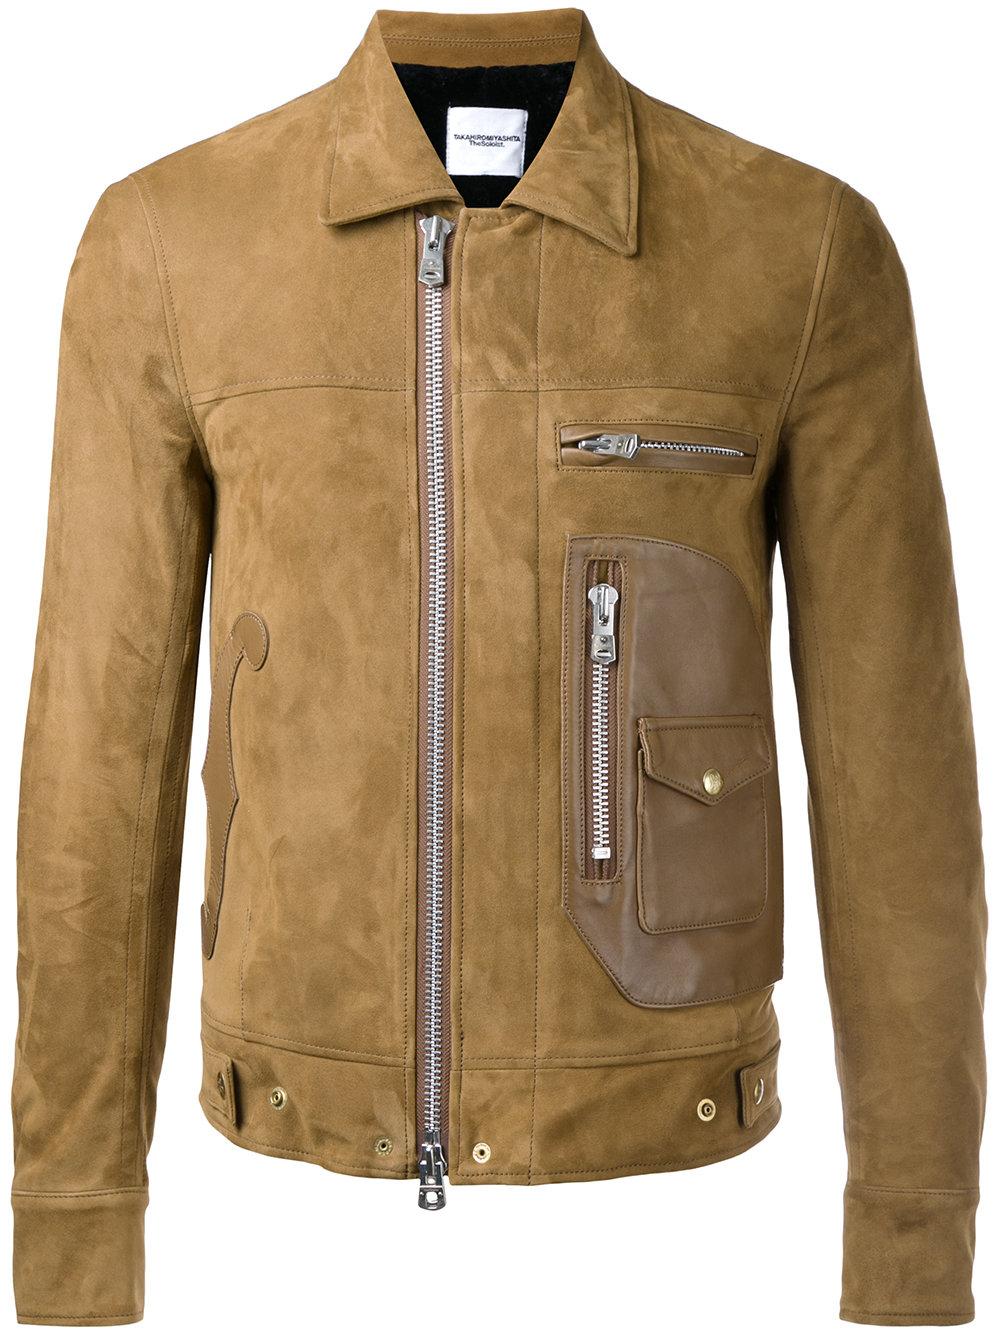 Leather Jacket Brands for Men (1)